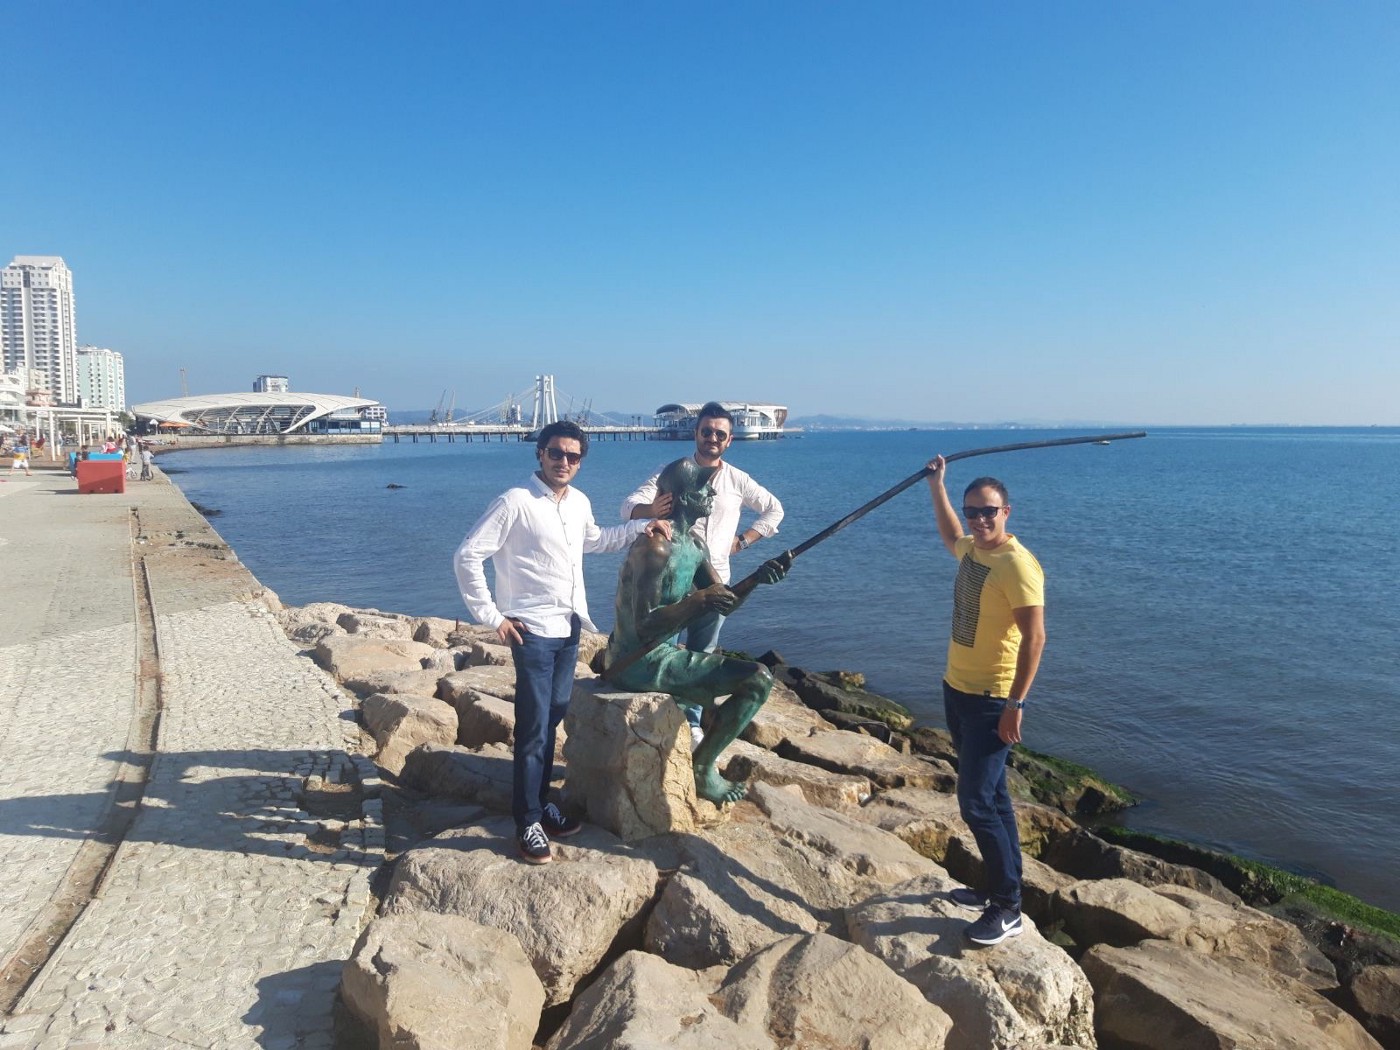 Abazoviq me miqtë e tij Ilir Harasani dhe Omer Bajraktari në Durrës, 2019. Foto kortezi e Mustafa Cankës